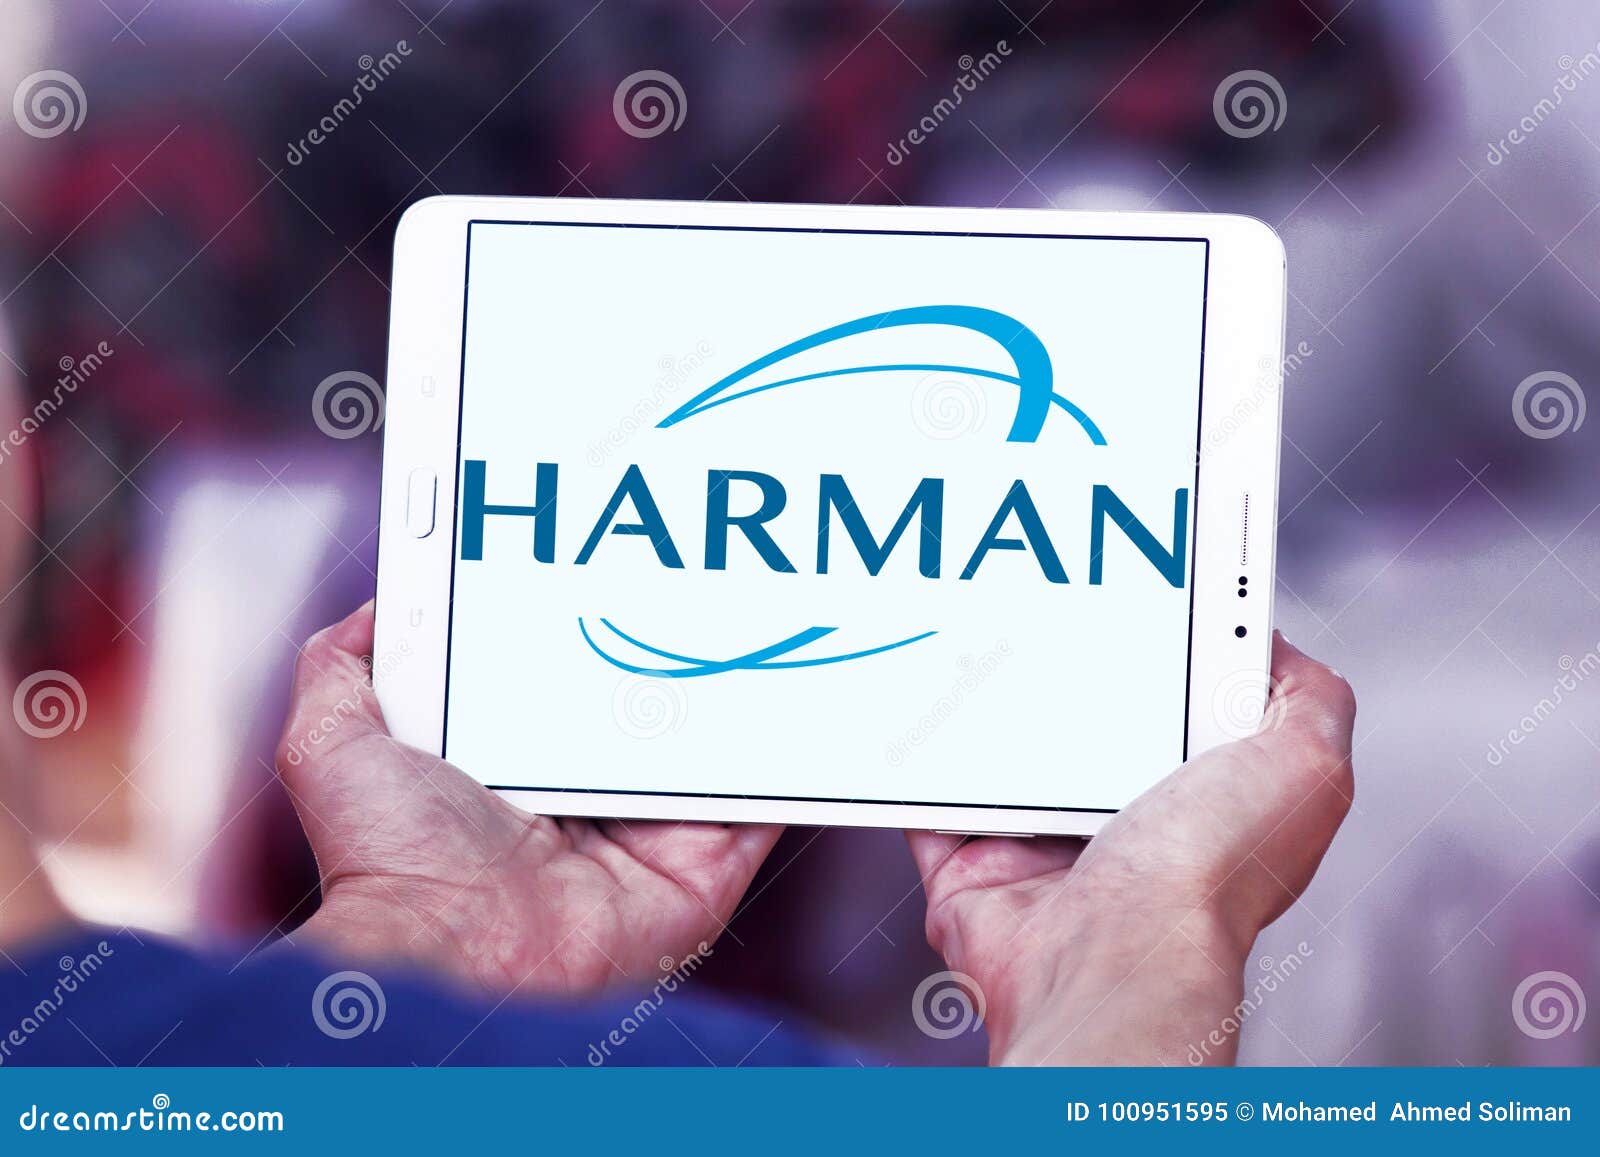 Διεθνές λογότυπο βιομηχανιών Harman. Λογότυπο της διεθνούς επιχείρησης βιομηχανιών Harman στην ταμπλέτα της Samsung Το Harman είναι αμερικανική επιχείρηση ότι τα σχέδια και οι μηχανικοί σύνδεσαν τα προϊόντα για τις αυτοκινητοβιομηχανίες, τους καταναλωτές και τις επιχειρήσεις παγκόσμιους, συμπεριλαμβανομένων των συνδεδεμένων συστημάτων αυτοκινήτων  ακουστικά και οπτικά προϊόντα, επιχειρηματική αυτοματοποίηση  και συνδεδεμένες υπηρεσίες